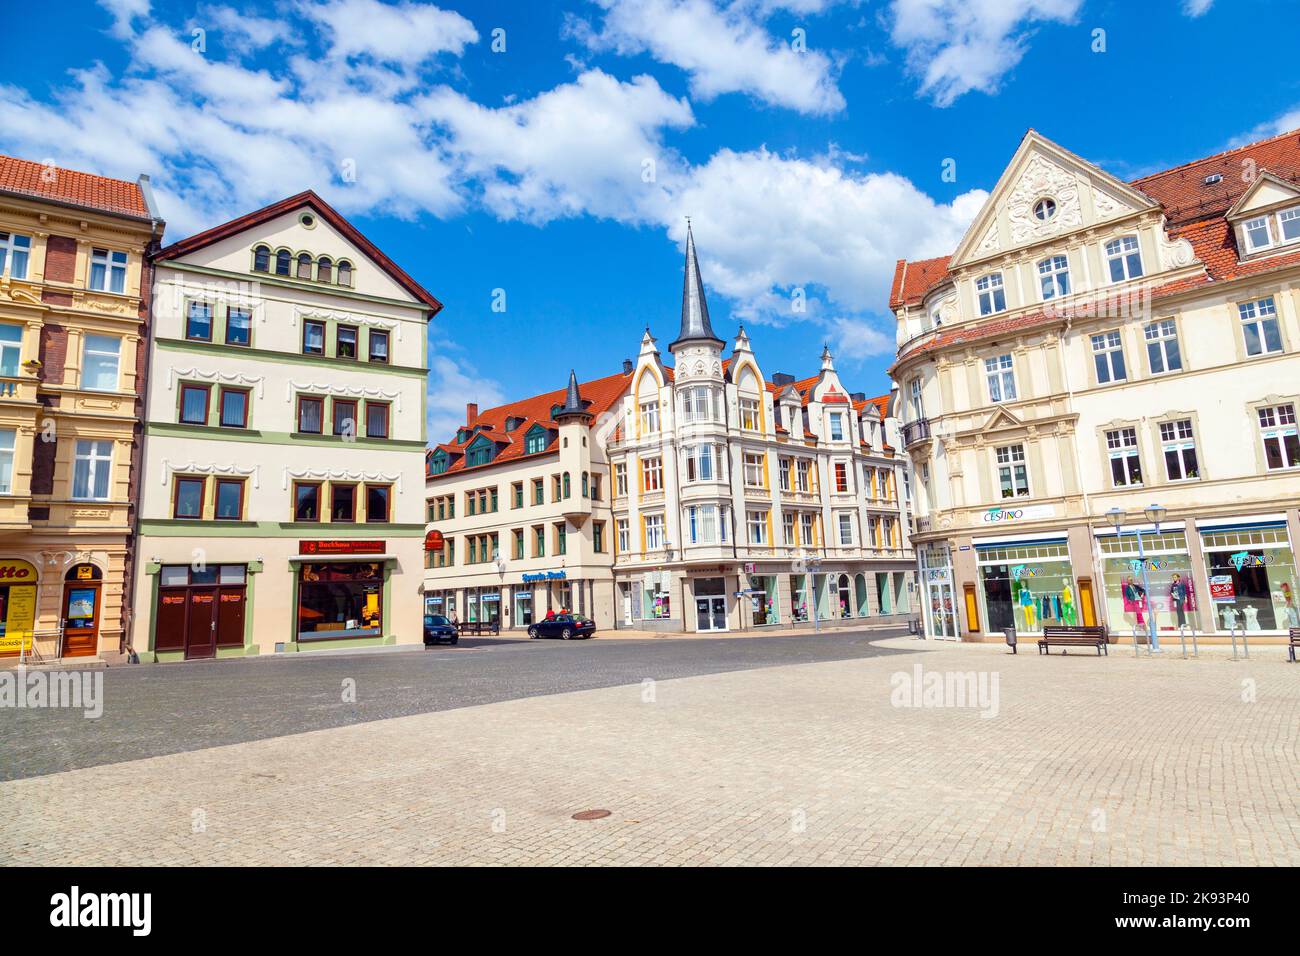 GOTHA, GERMANIA - 28 MAGGIO: Mercato famoso il 282012 maggio a Gotha, Germania. E' circondato da case patrizie restaurate con porte barocche. Foto Stock